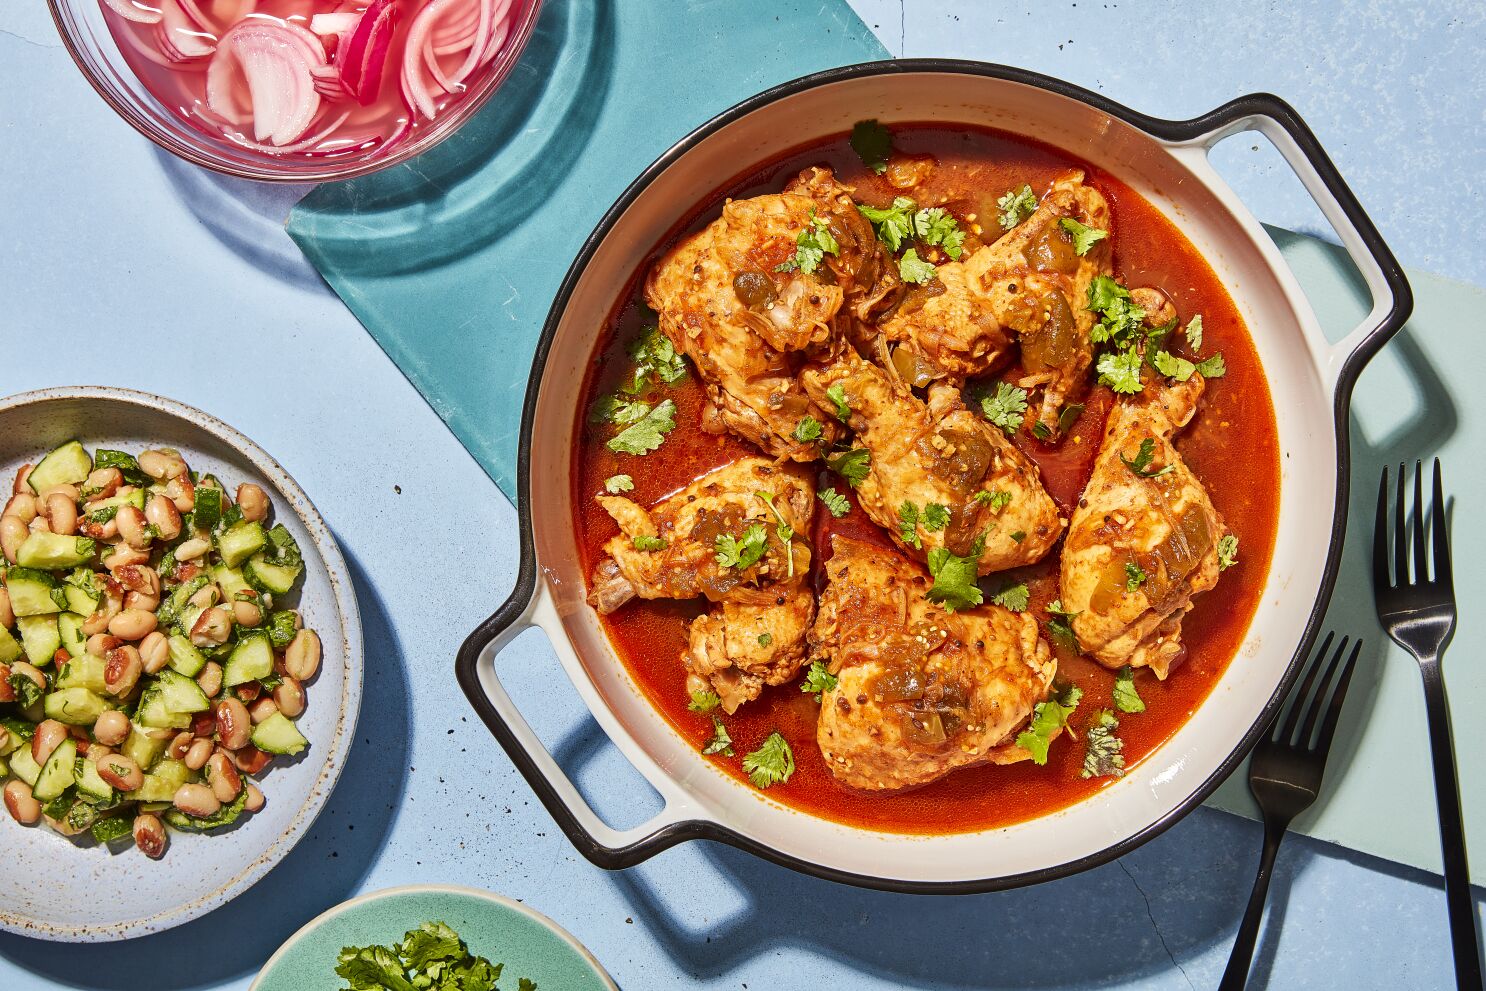 Semana de comidas: Recetas de la chef y escritora gastronómica Jenny Dorsey  - Los Angeles Times